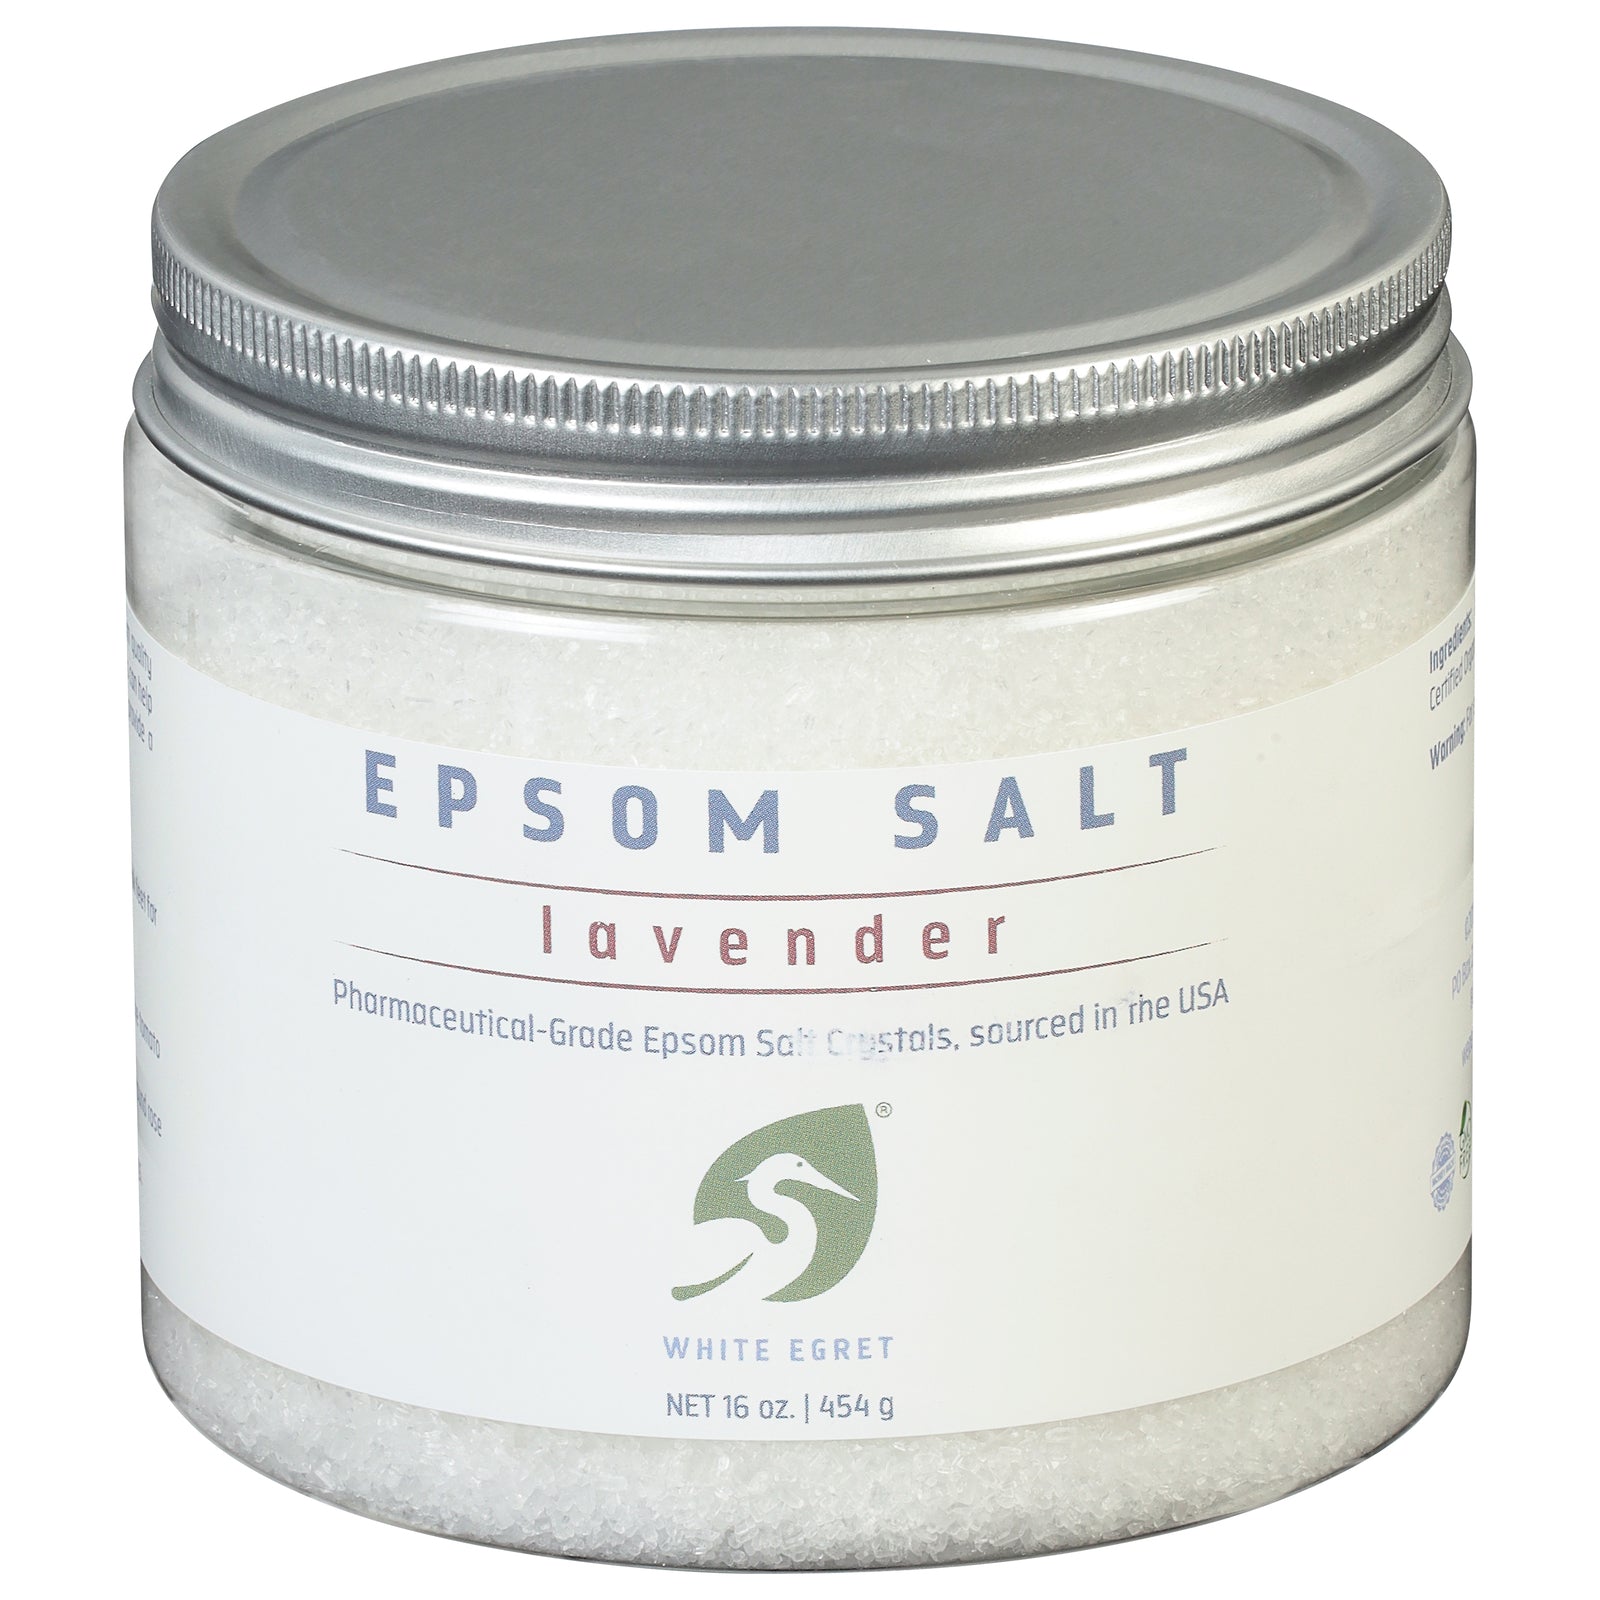 White Egret - Epsom Salt Lavender - 1 Each - 16 Oz